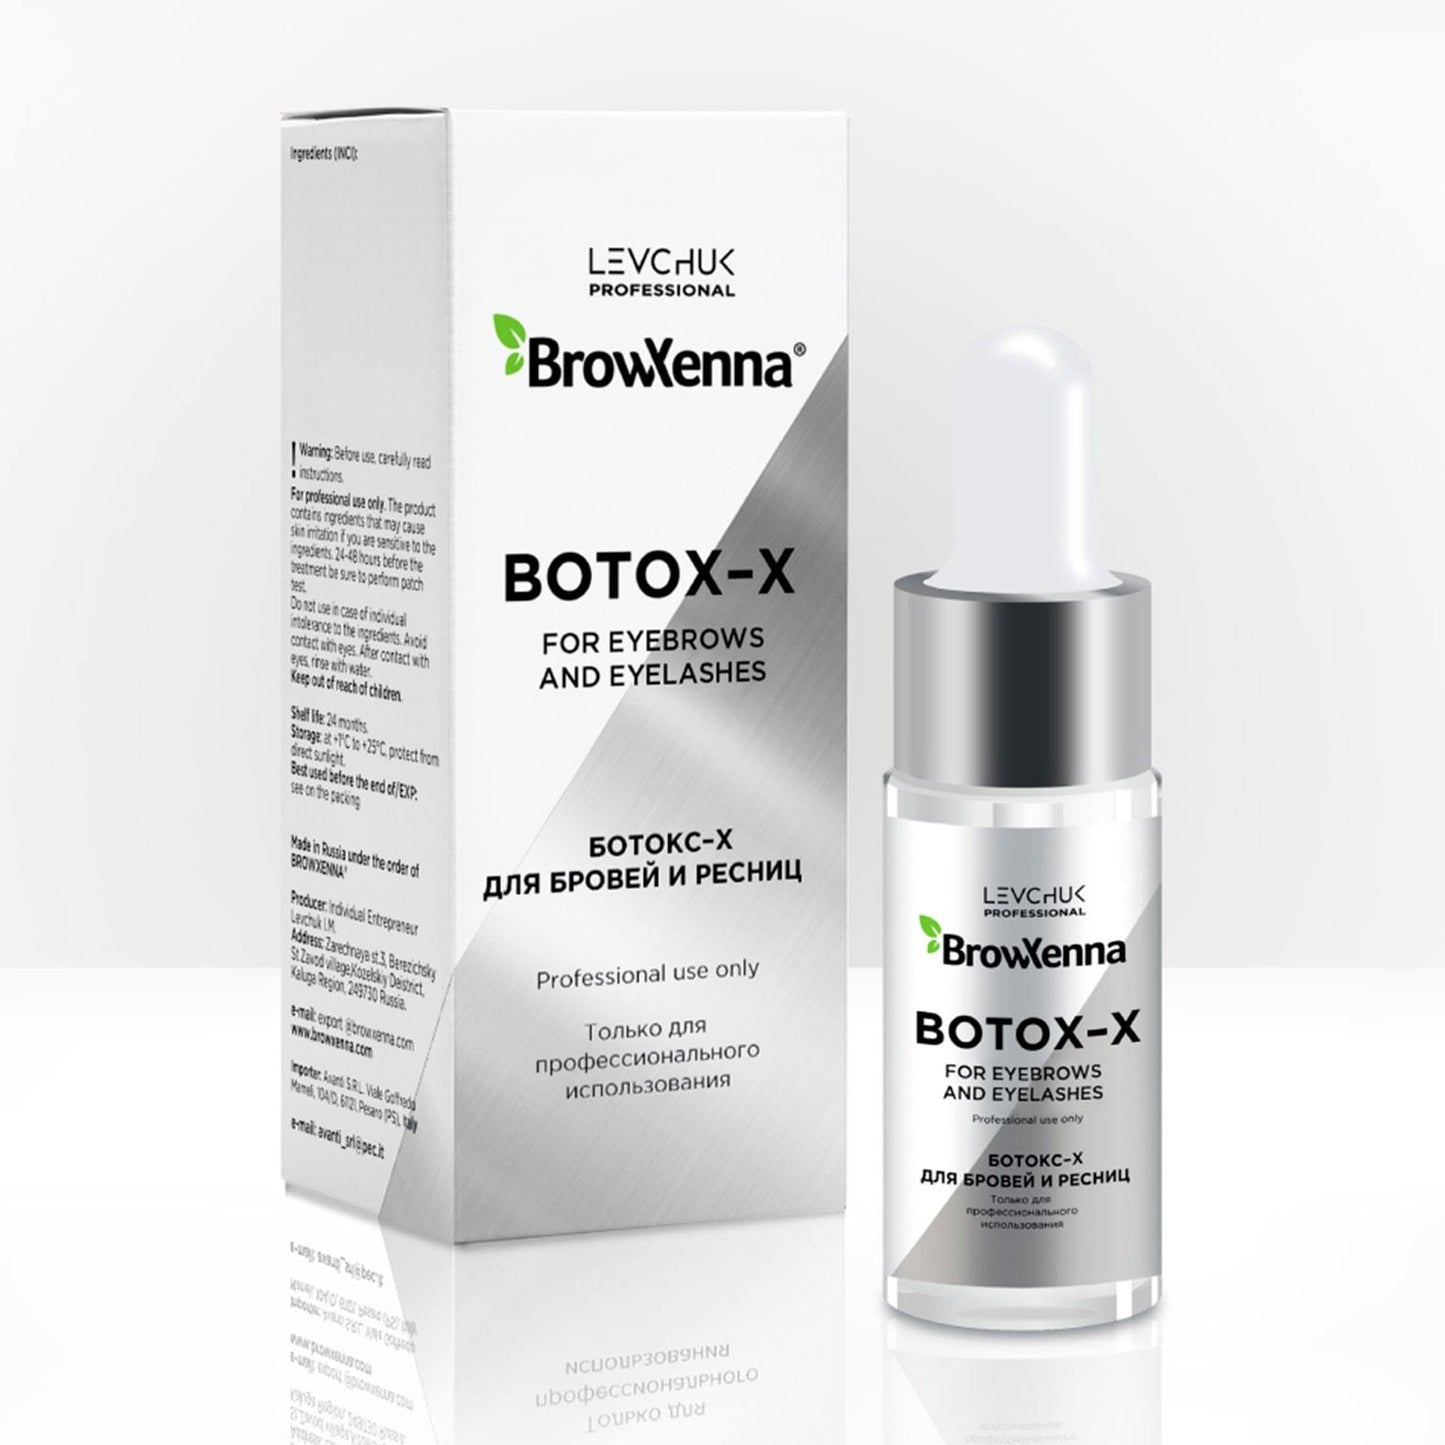 Botox-X de BrowXenna